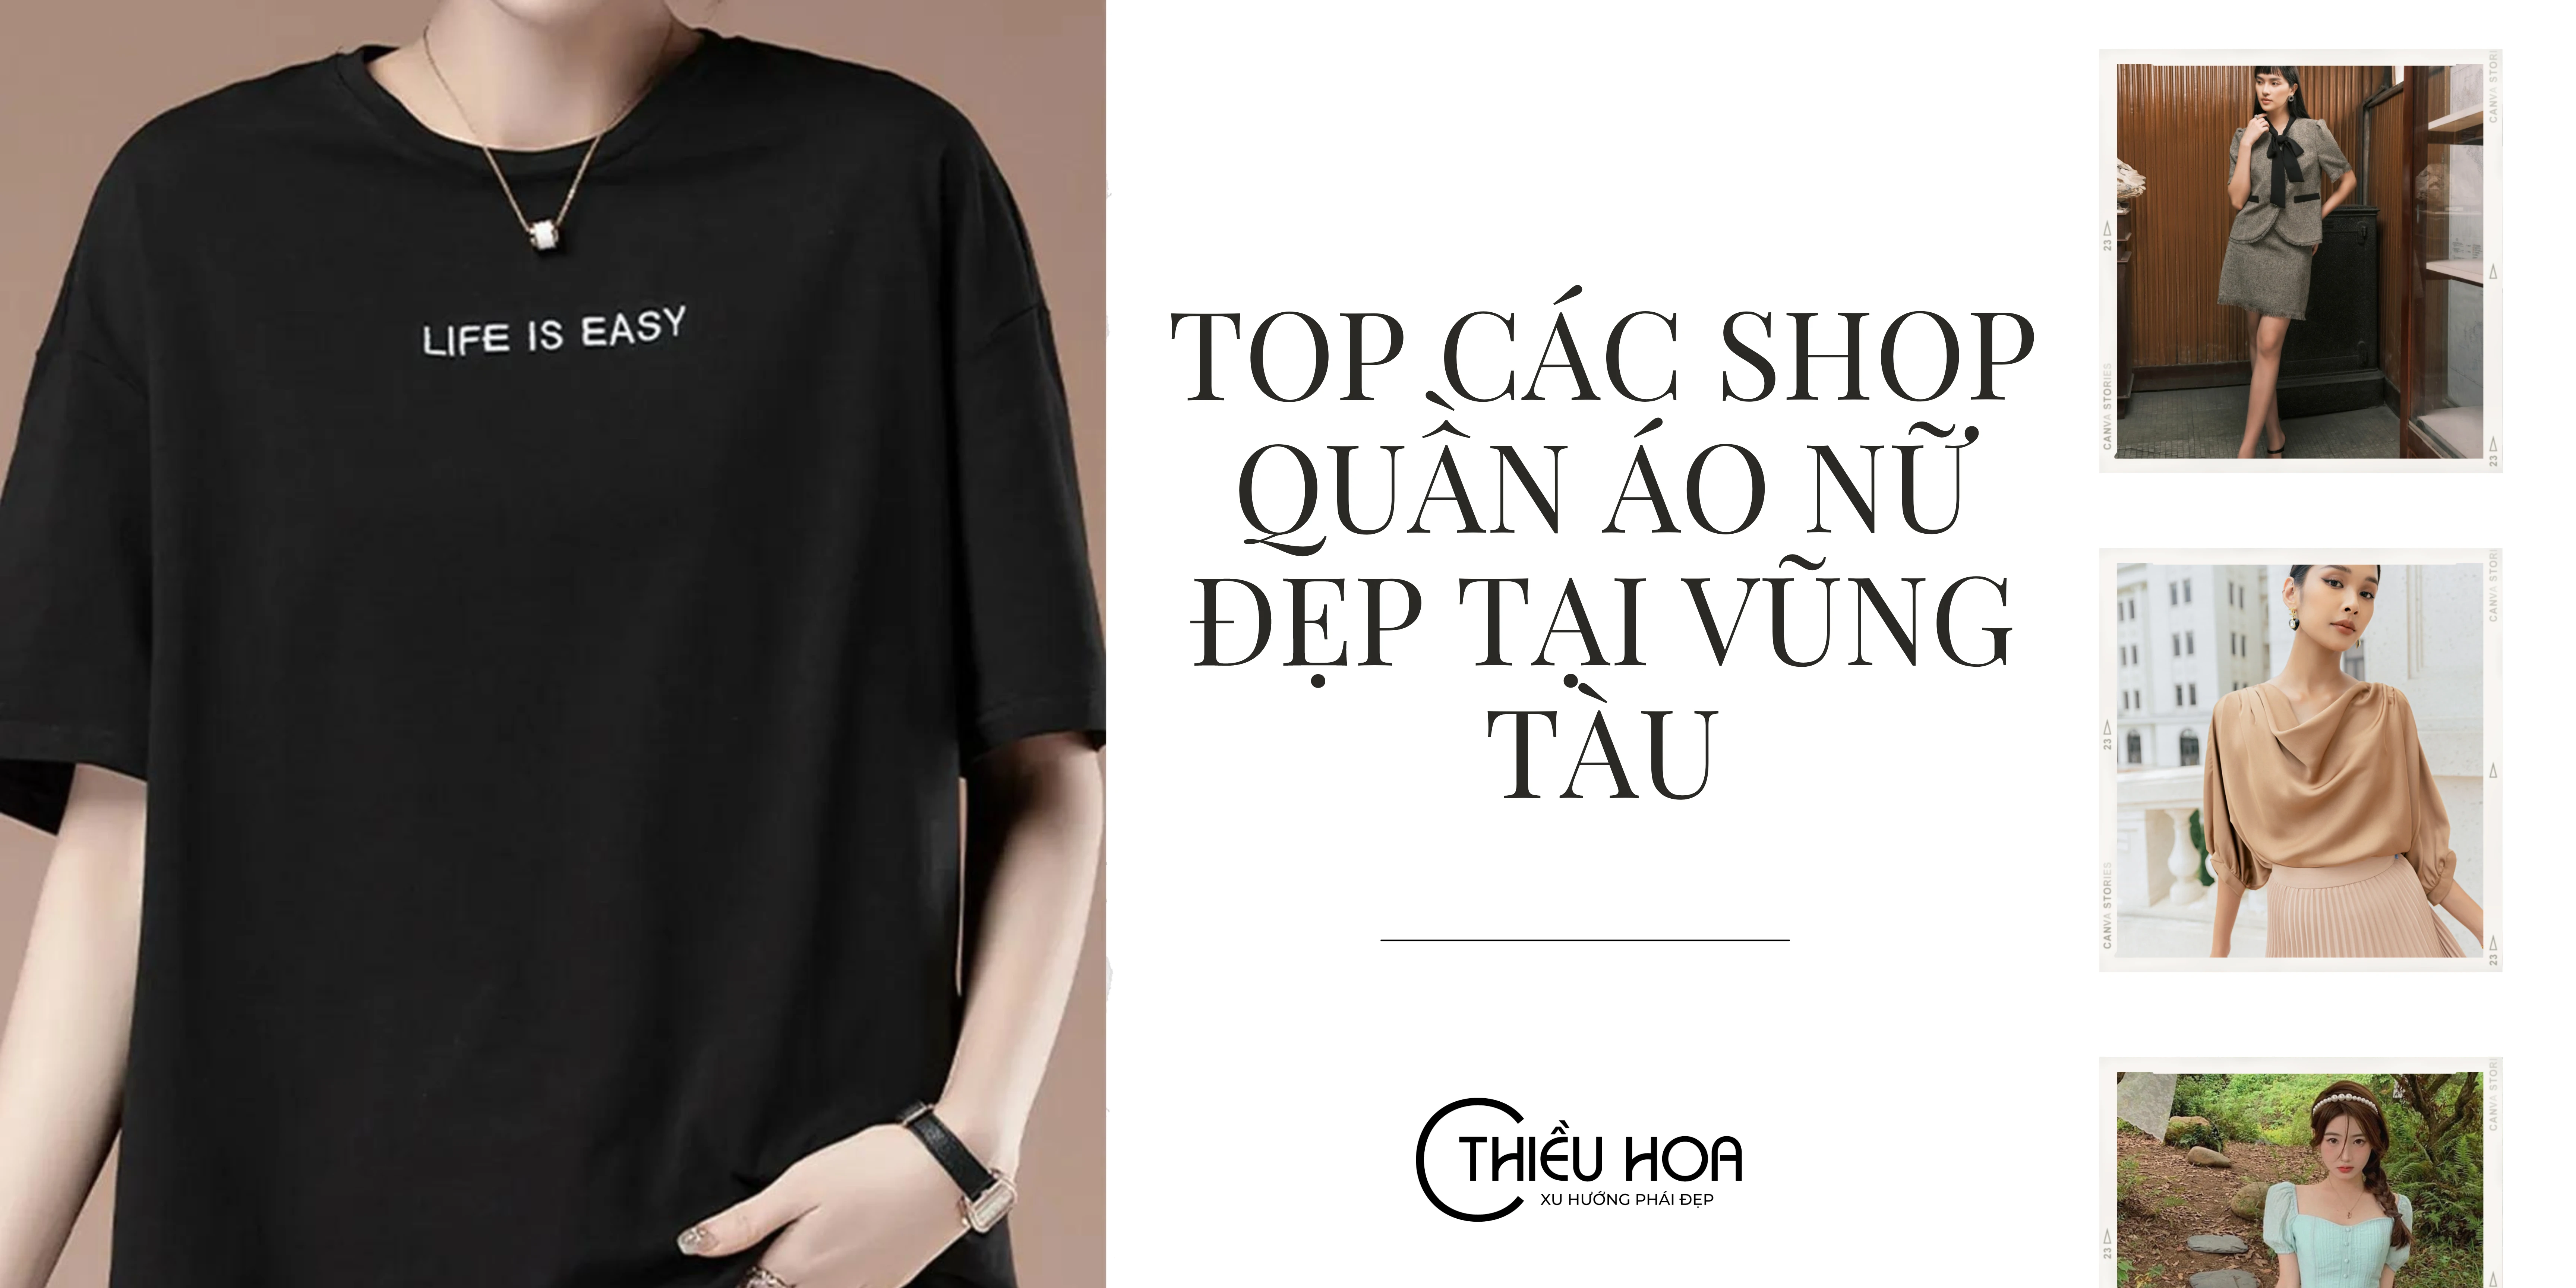 Top 10 cửa hàng quần áo nữ đẹp nhất tại Vũng Tàu